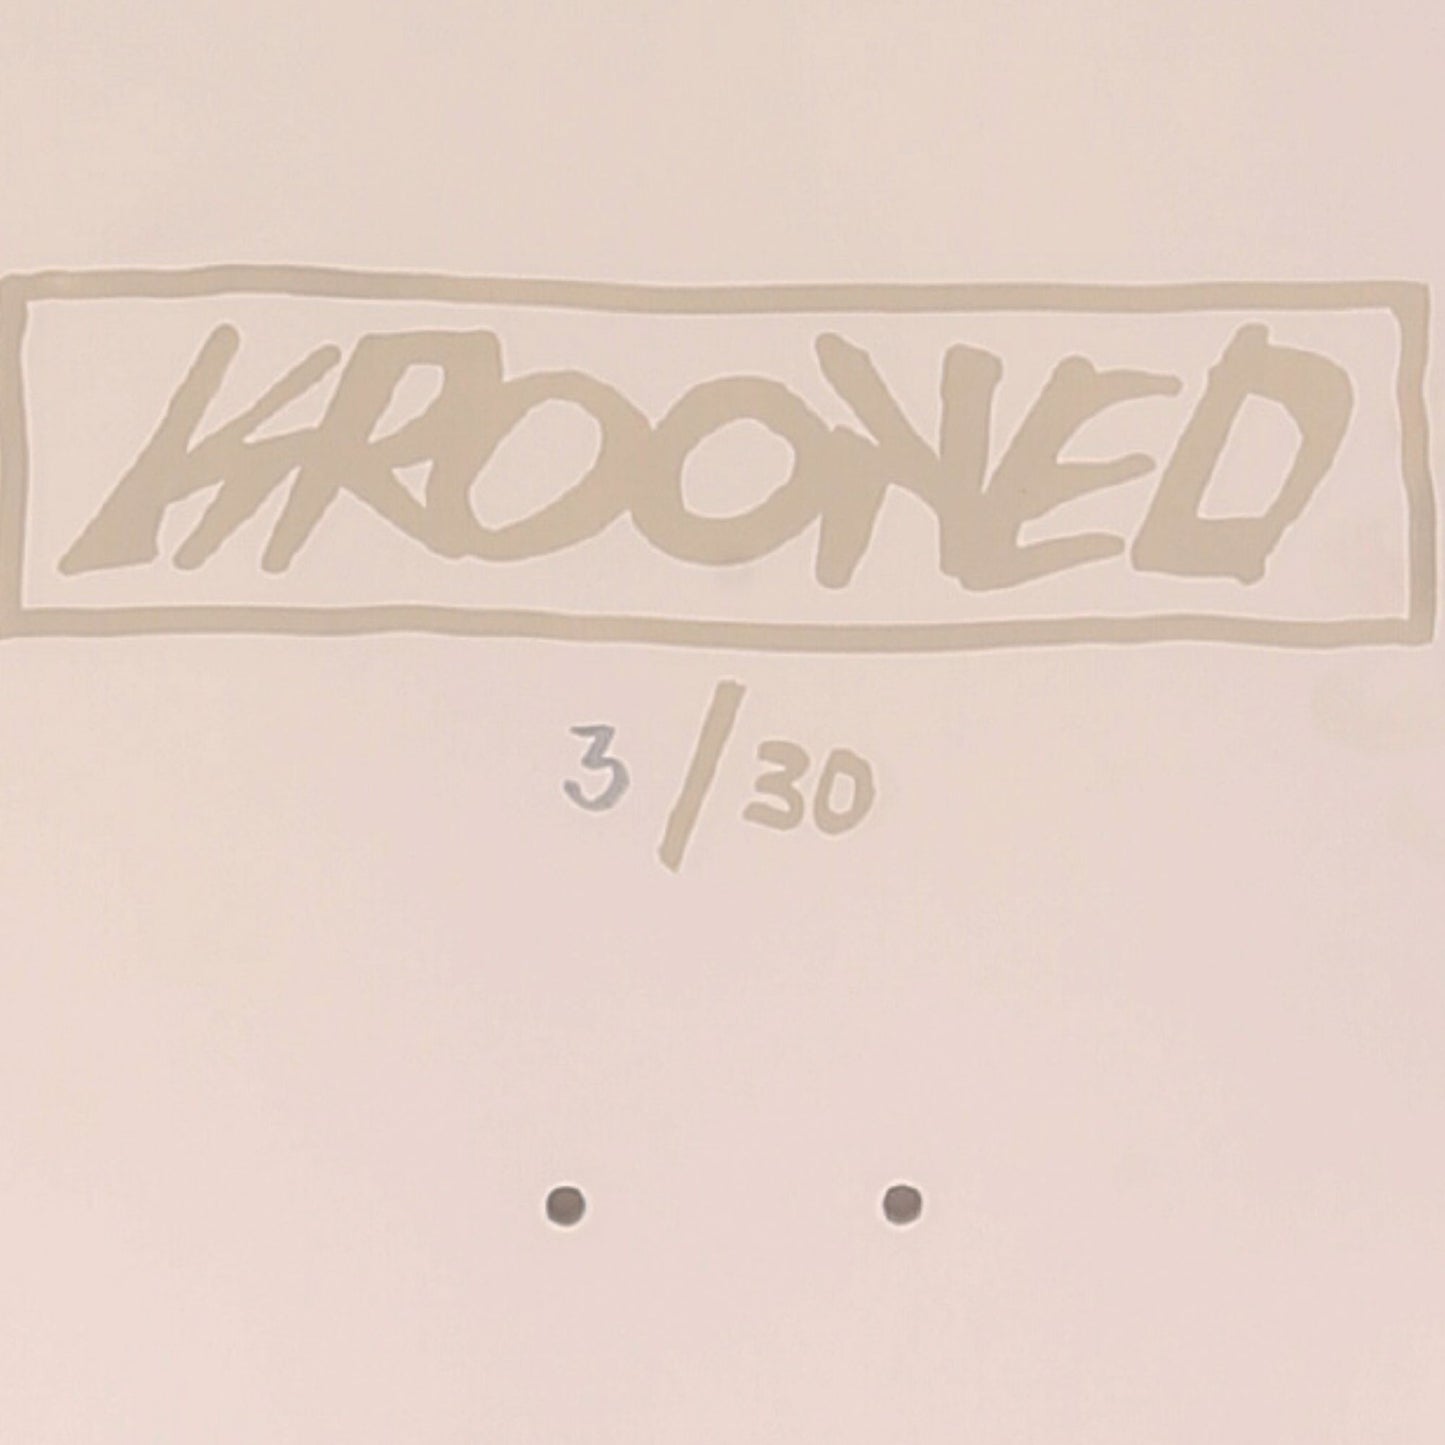 Krooked / Split Face Skateboard Deck / Mark Gonzales / 8.5 / Signed